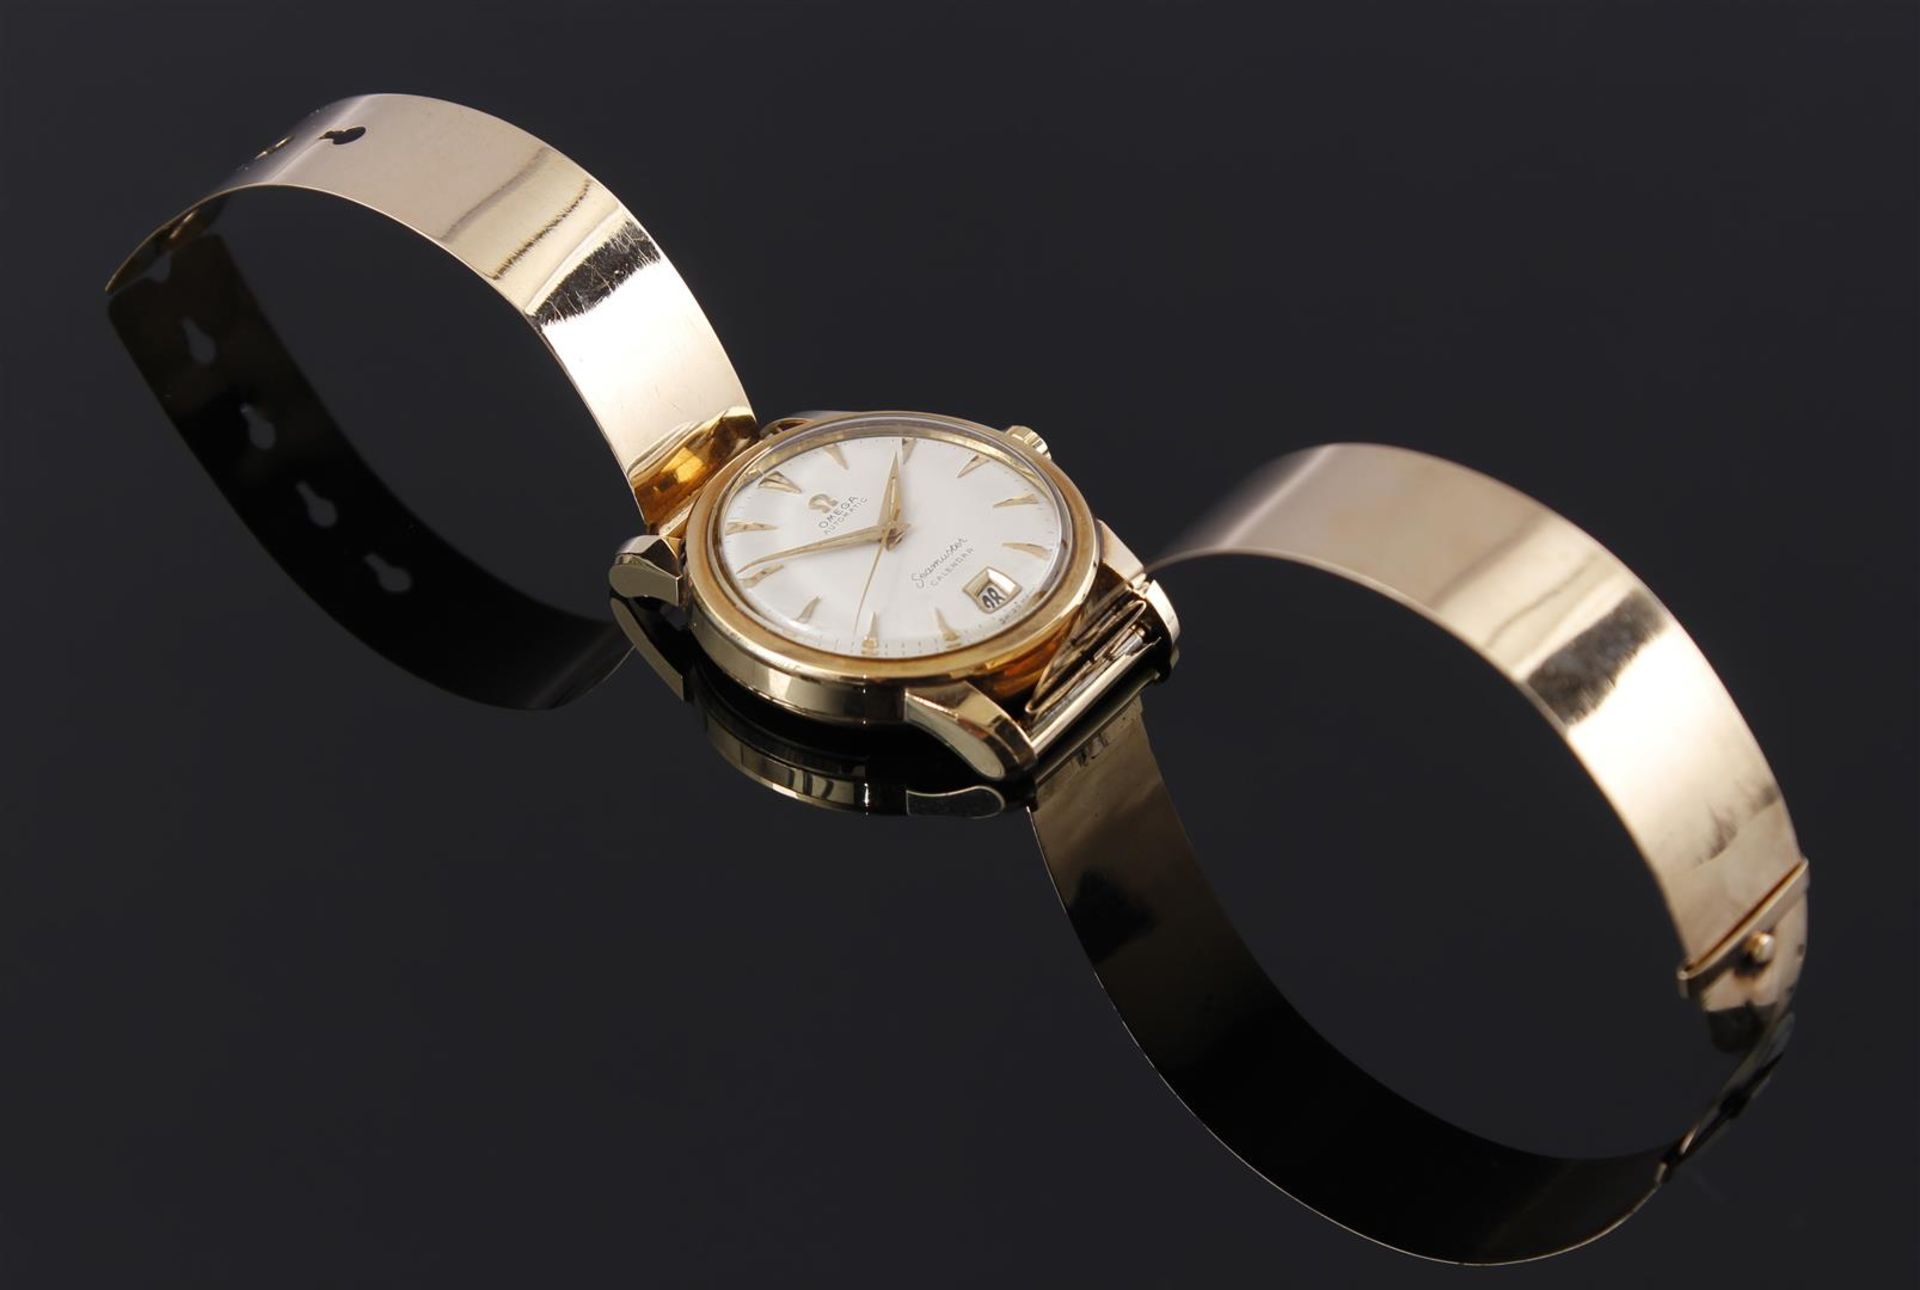 Omega Seamaster Kalendar wristwatch - Image 2 of 2